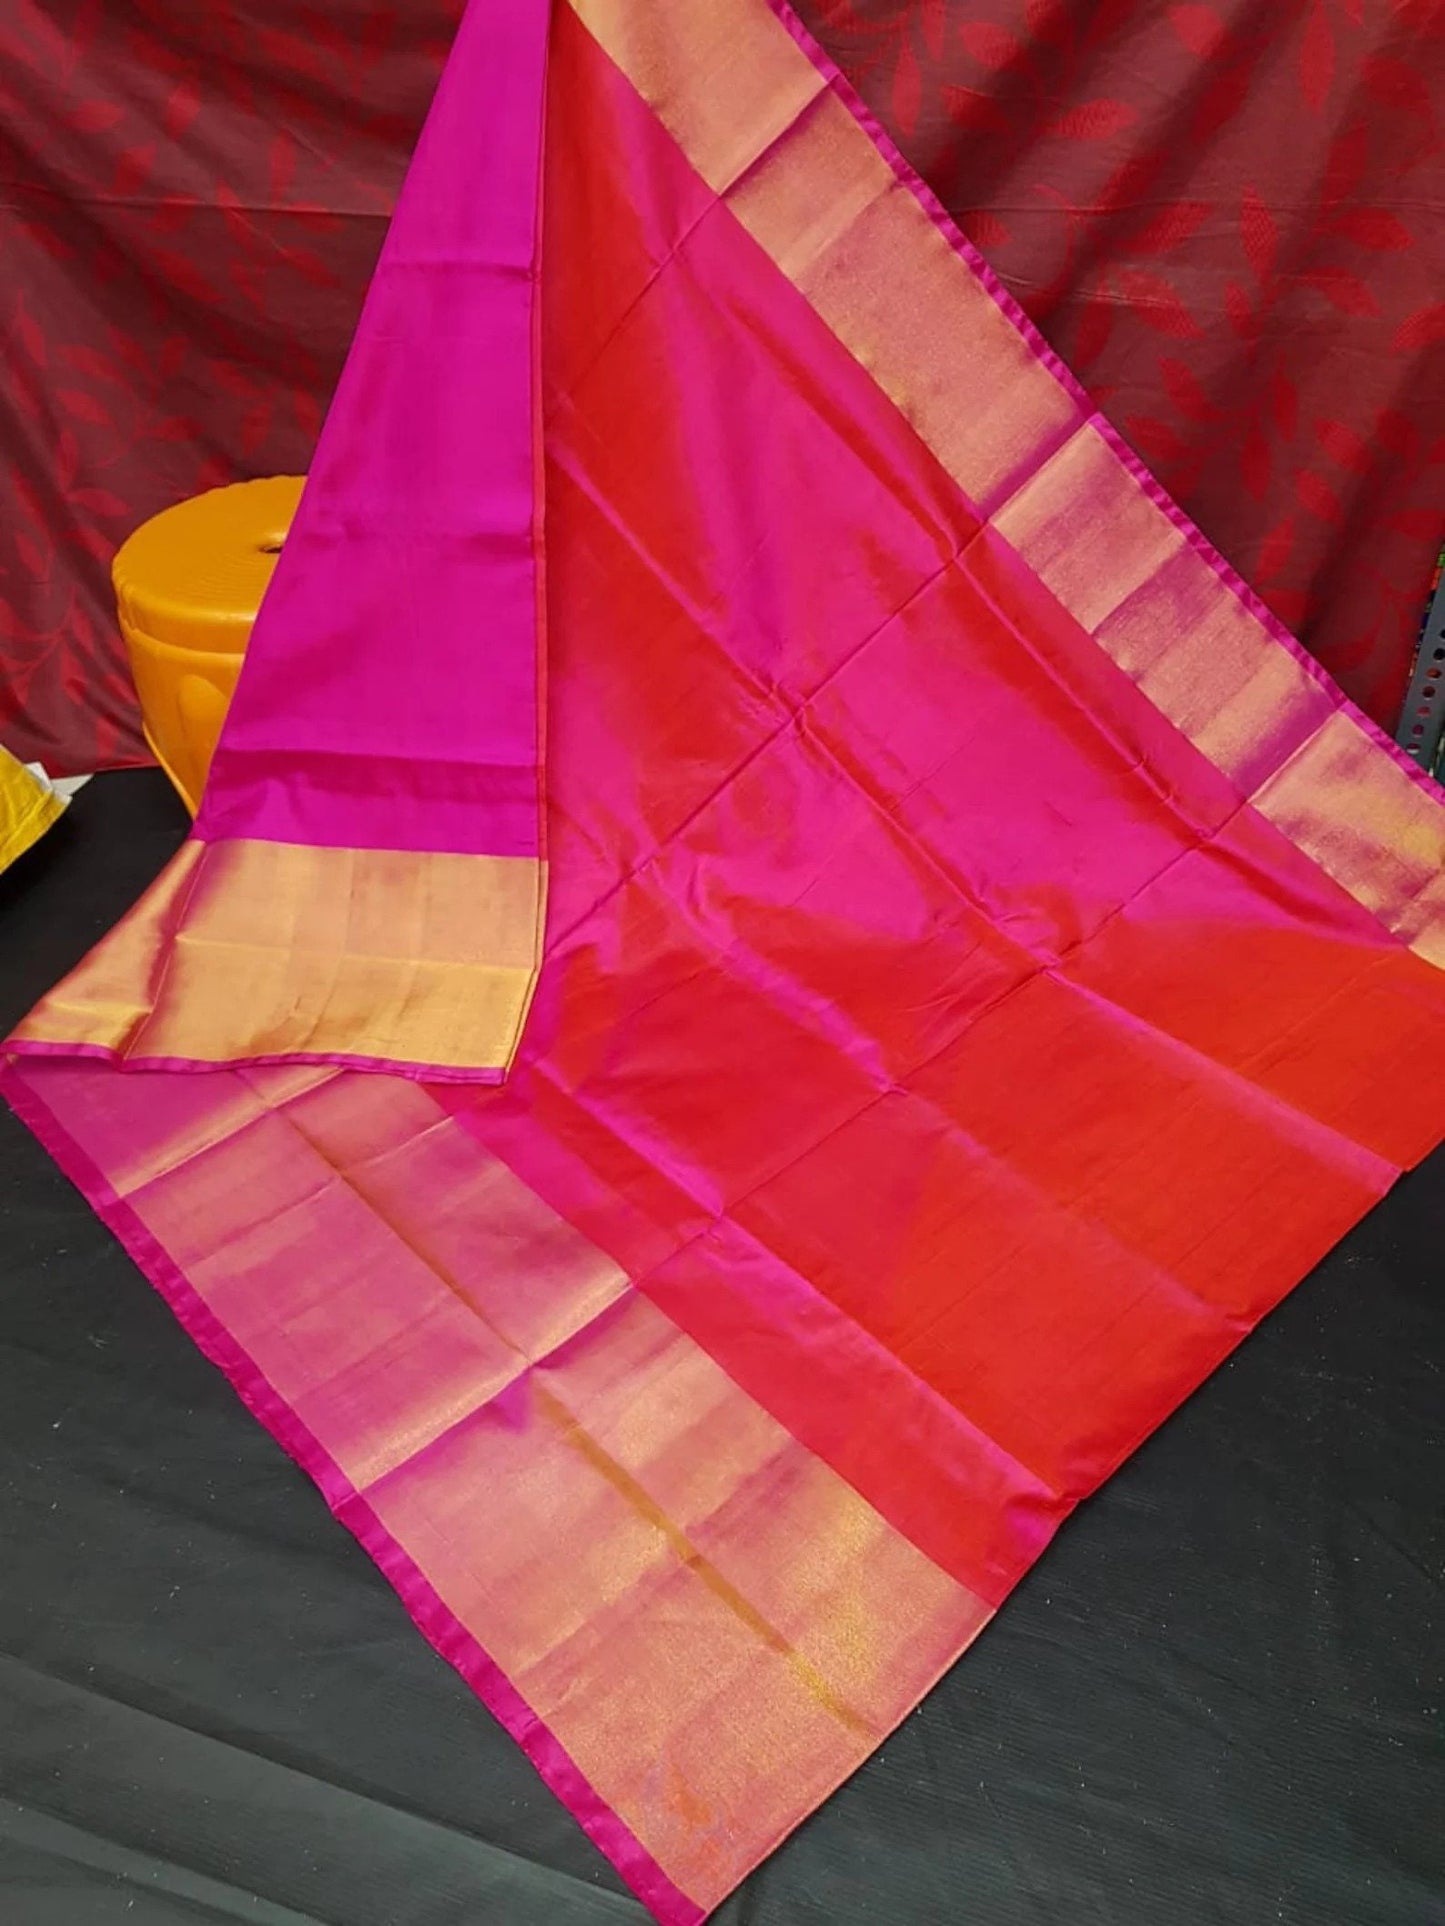 Pink and red mix Uppada Silk Pattu Saree, khadi big border Pure Uppada Pattu Saree, handwoven silk saree, two tone saree for woman